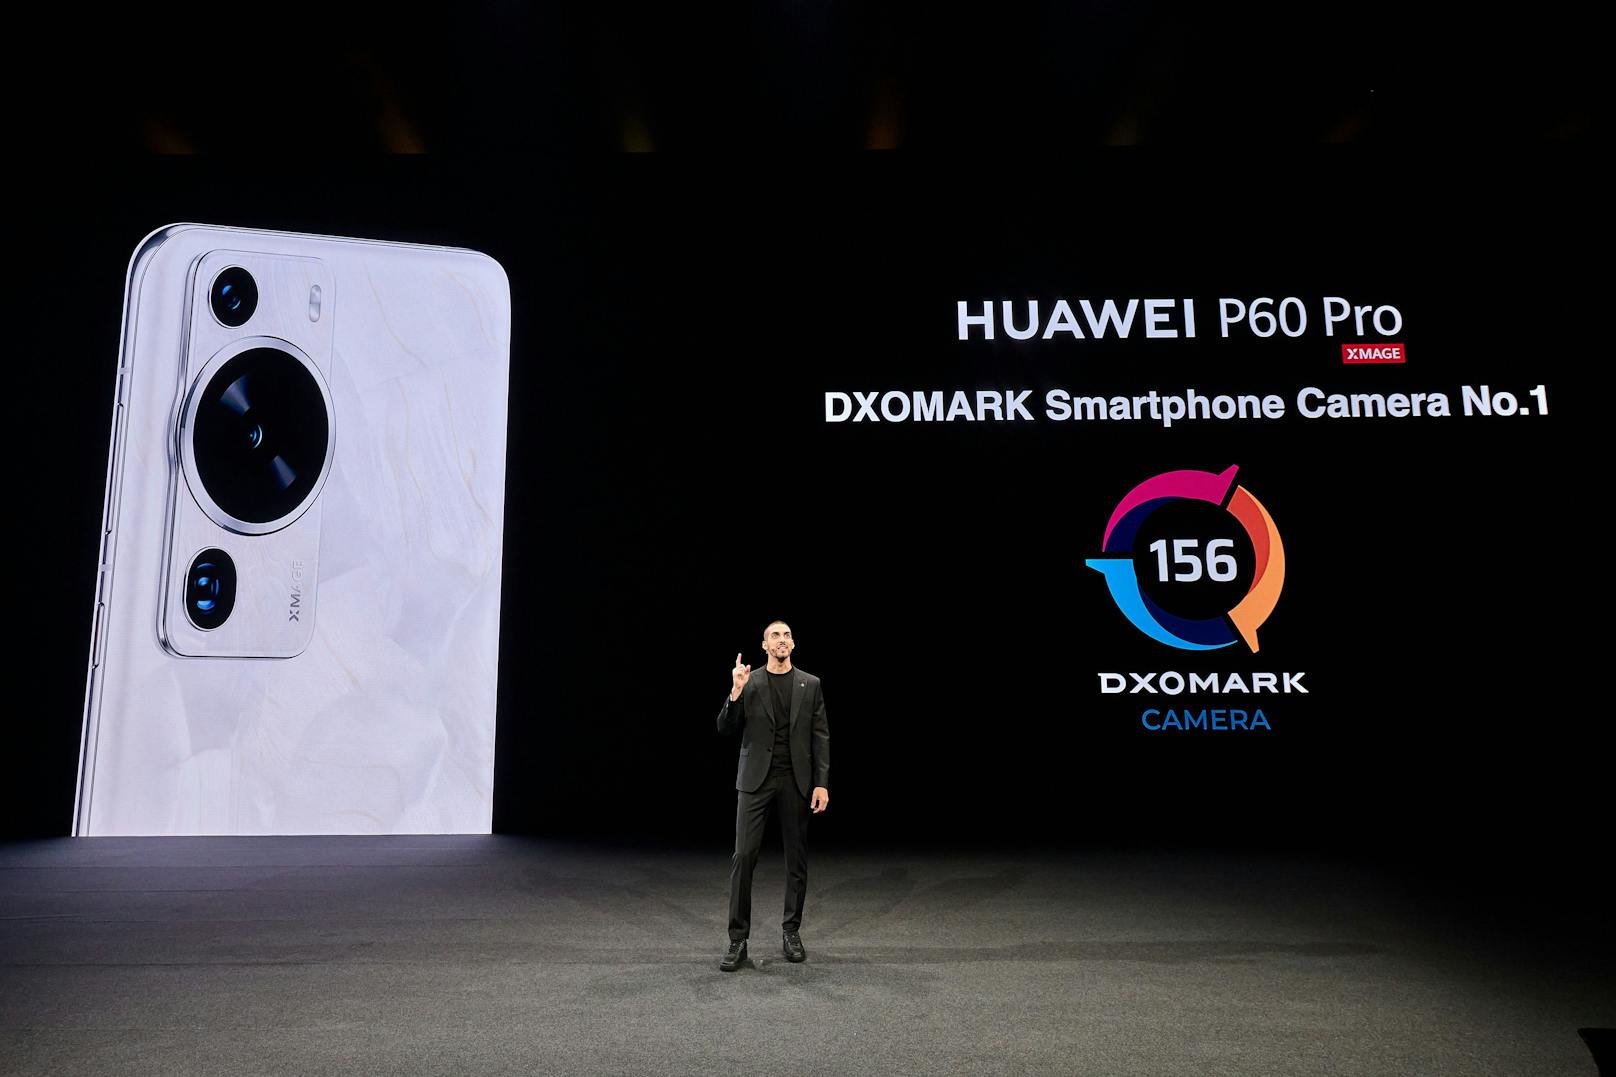 Das neu vorgestellte Huawei P60 Pro ist das Nummer 1 Smartphone mit der höchsten Punktzahl in der Geschichte des DXOMARK-Rankings.